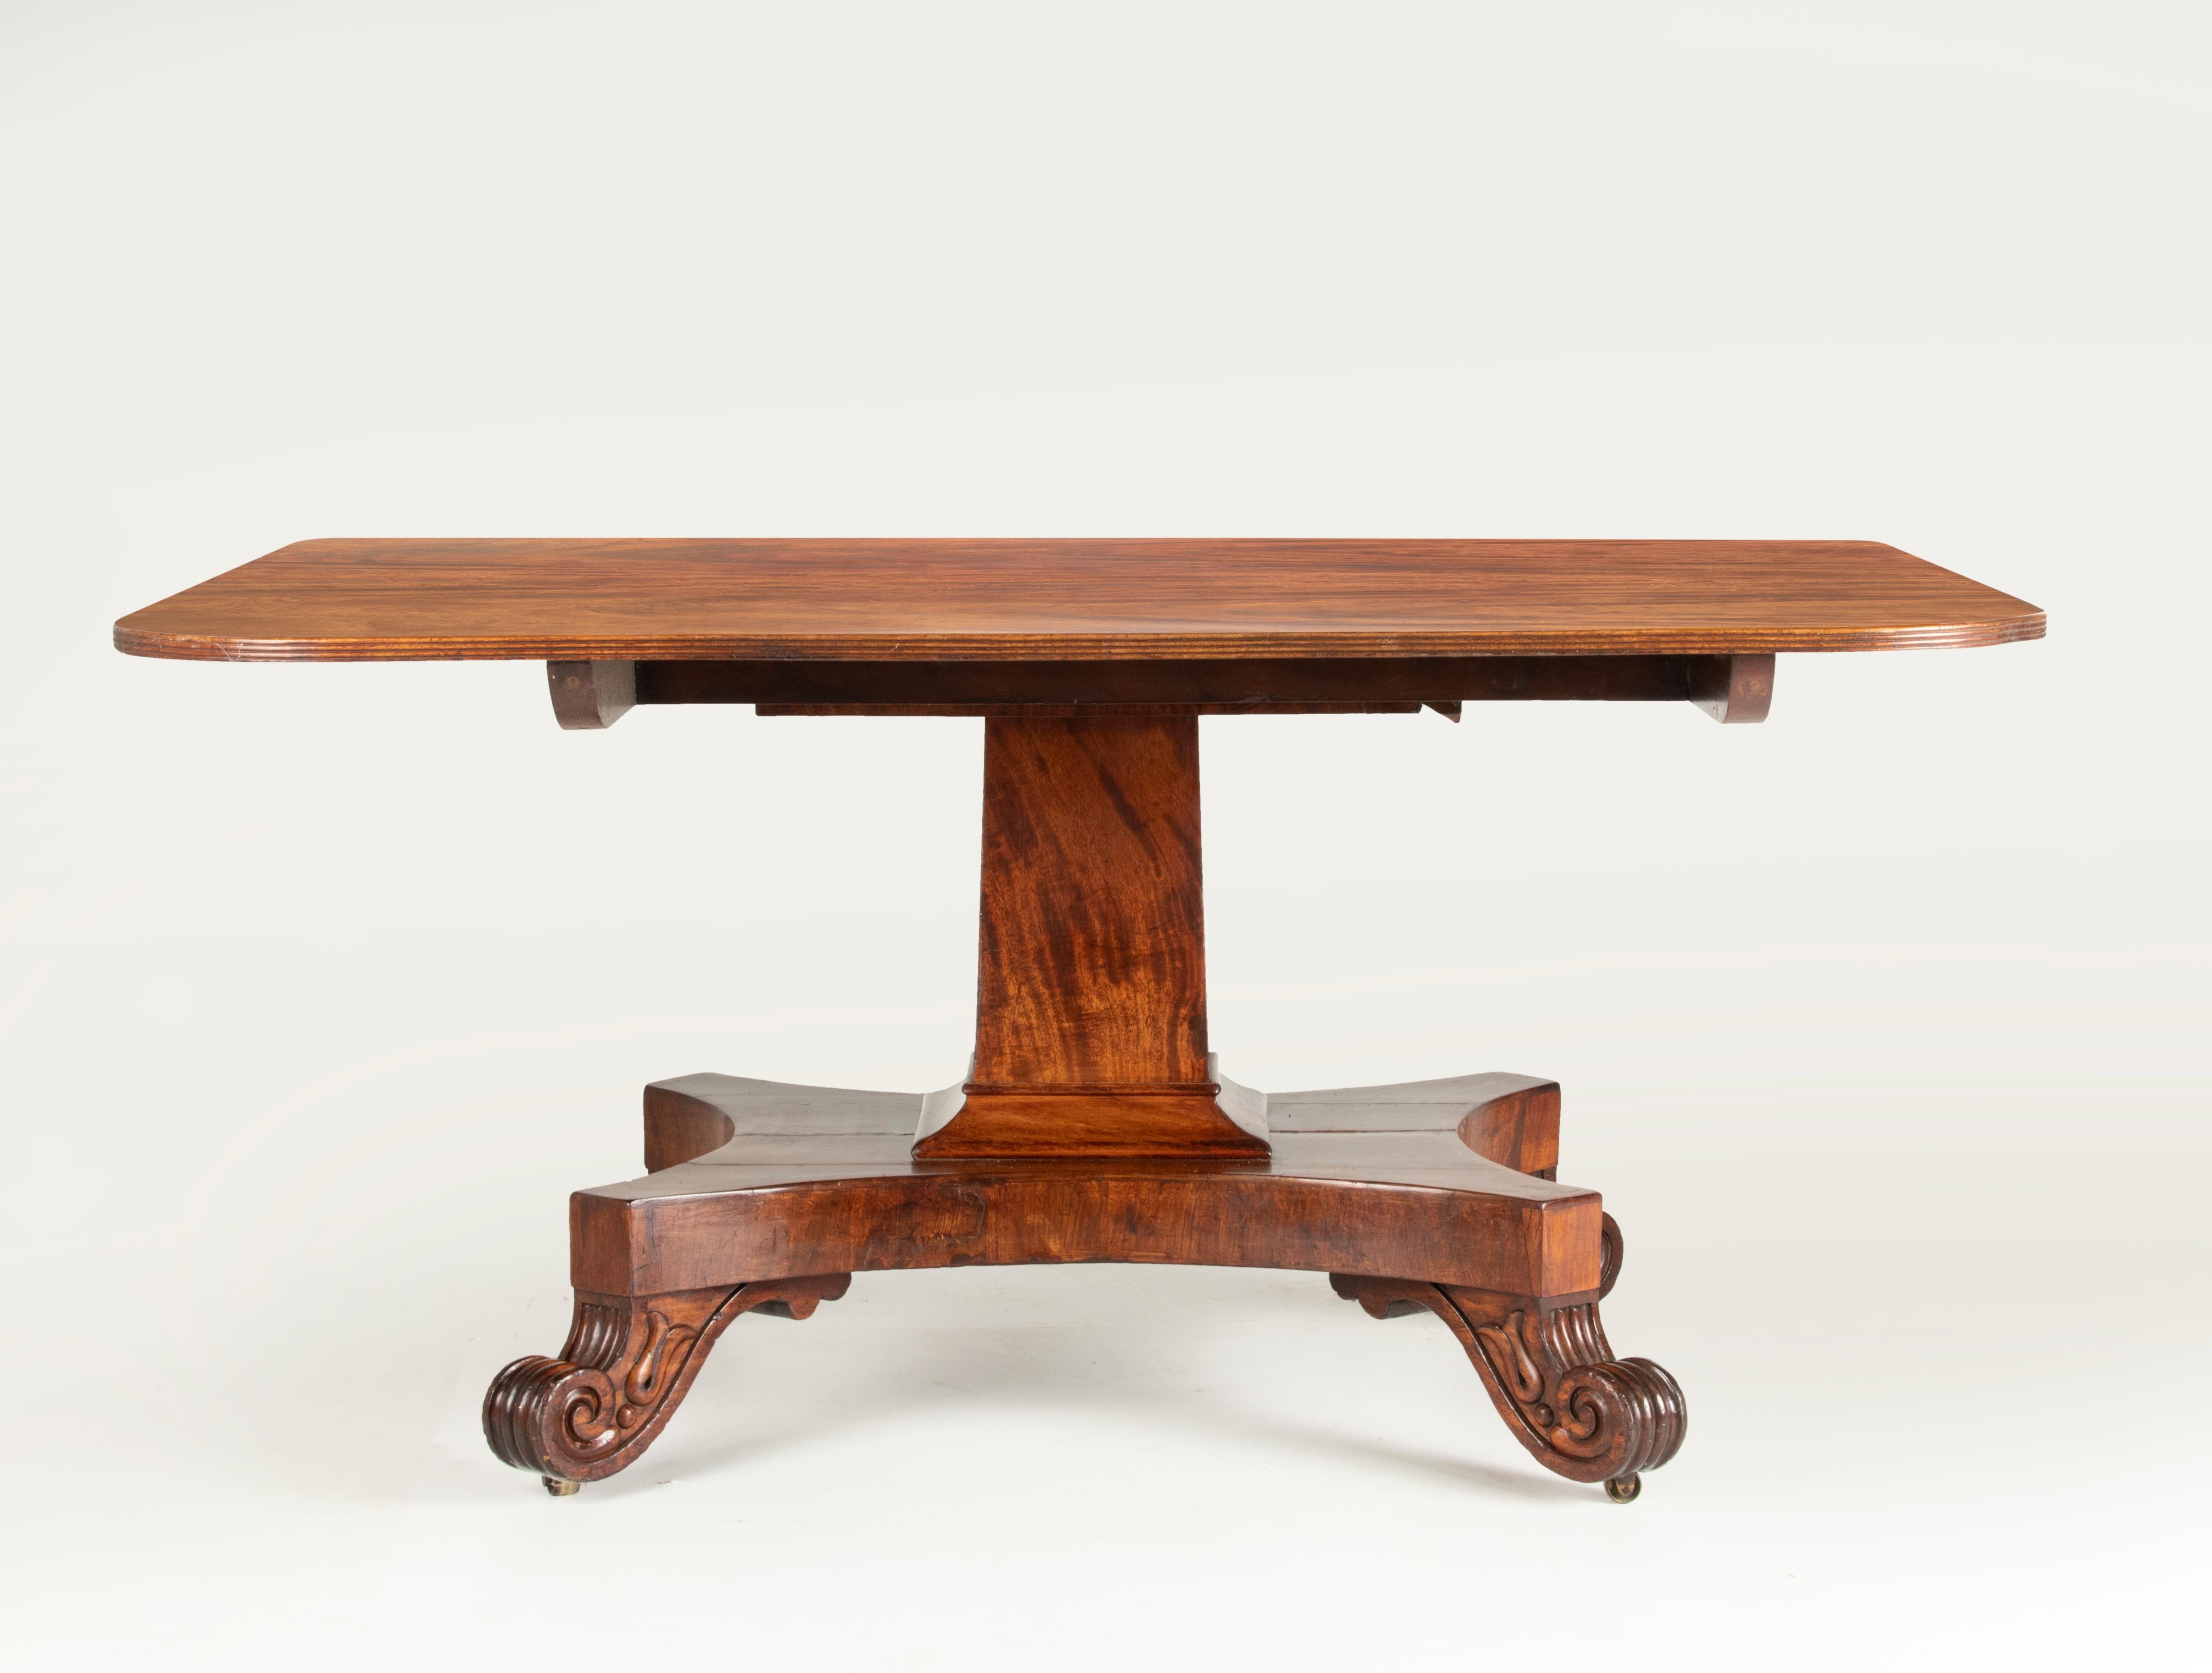 Ein antiker englischer Esszimmertisch im Regency-Stil mit einer rechteckigen Platte. Der Tisch ist aus Mahagonifurnier gefertigt, die Platte hat eine schöne warme Ausstrahlung und Haptik. Steht auf einem Sockel mit geschnitzten Füßen, unter denen